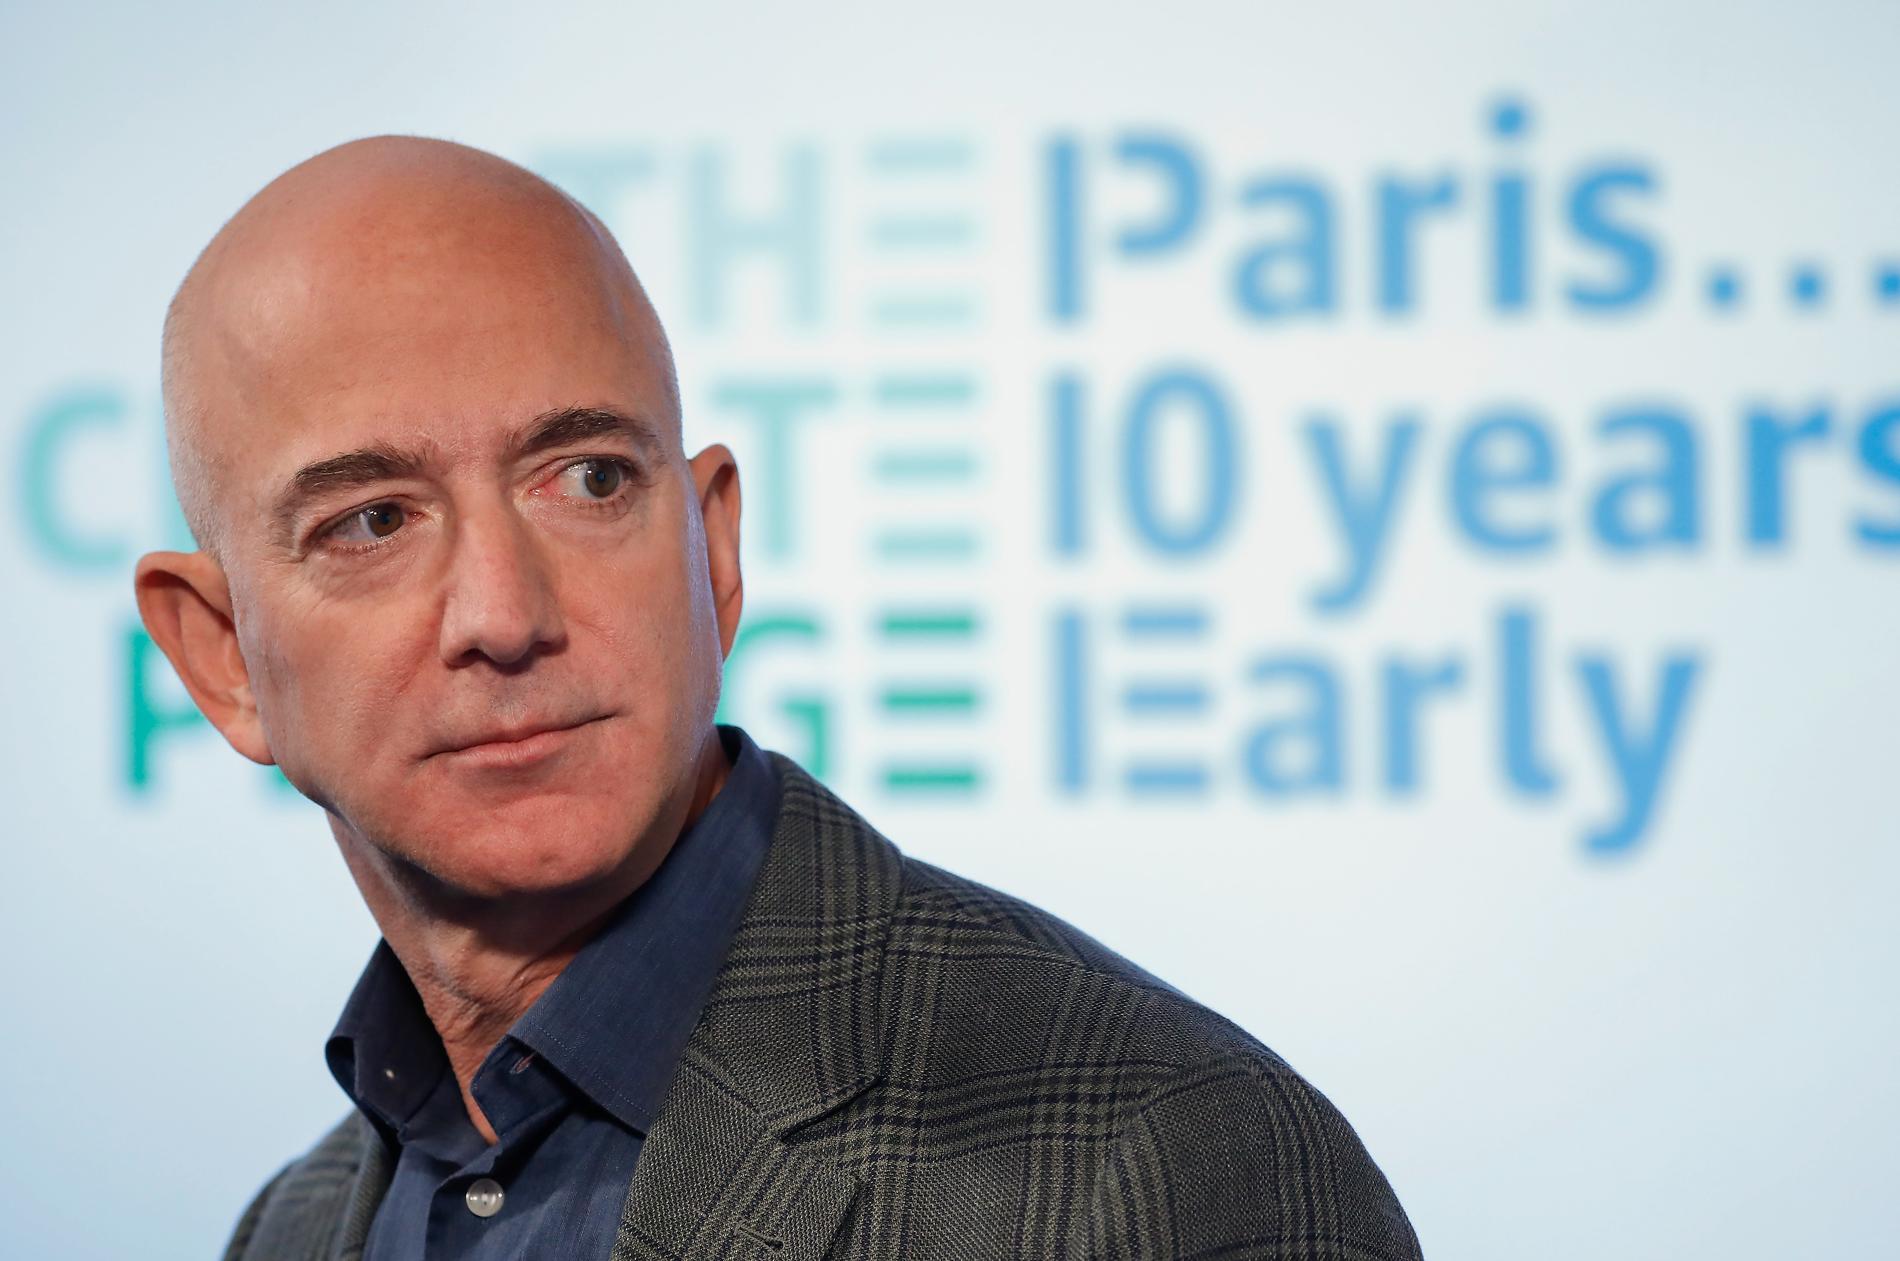 Jeff Bezos företag Amazon ska vara klimatneutralt 2040, tio år innan Parisavtalet kräver. Arkivbild.